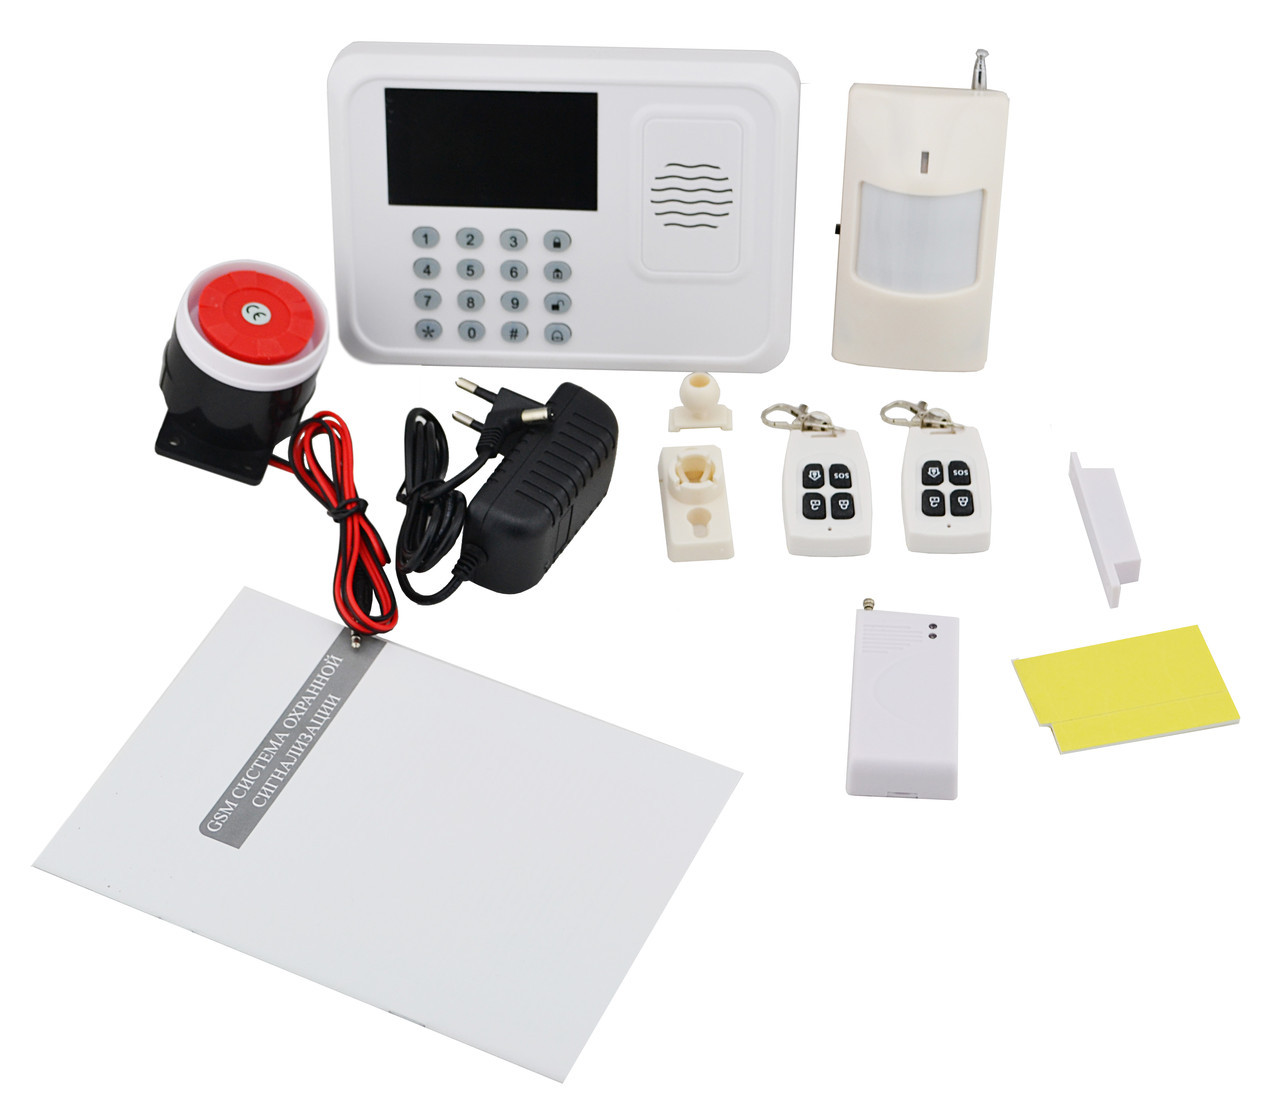 Аларм купить. GSM система охранной сигнализации g200. Охранная сигнализация g50r. DVG-p12 GSM Alarm Kits комплект GSM сигнализация. DVG-p13 (GSM Alarm Kits комплект) GSM сигнализация.